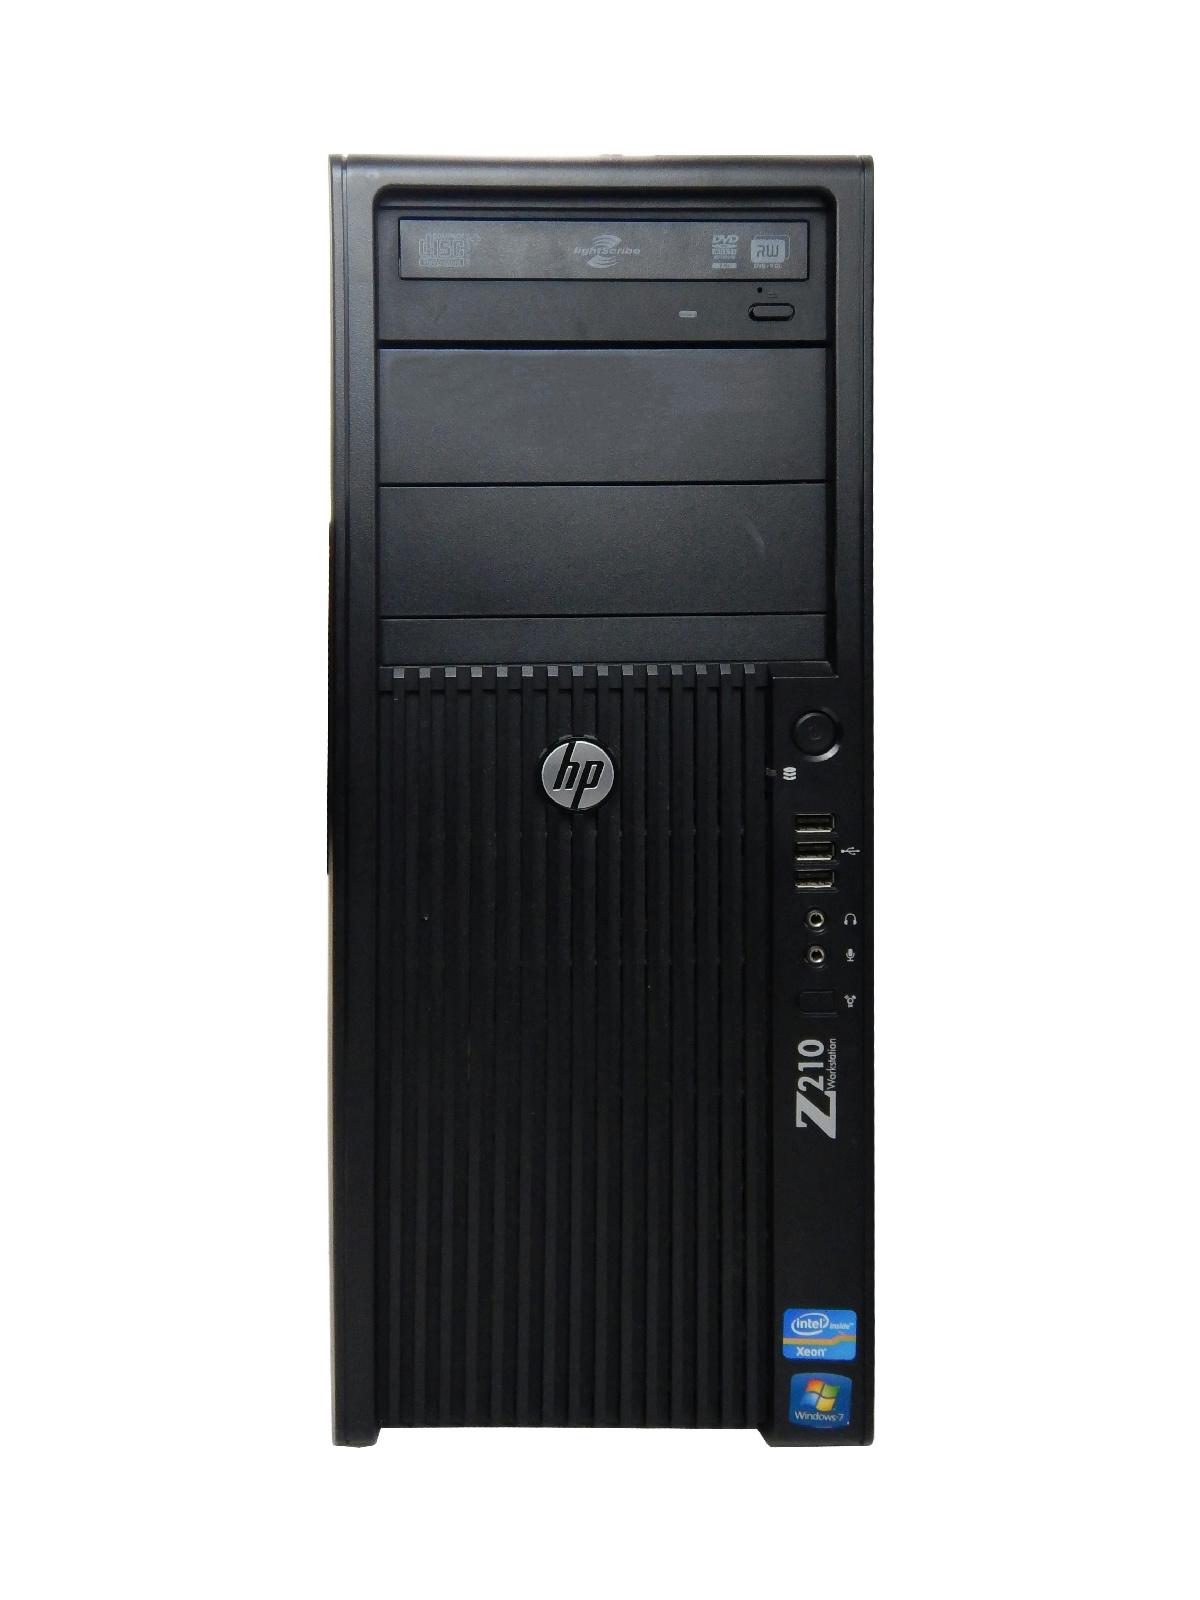 HP Z210 Workstation AMD ATI Radeon R7 250 2GB Intel Xeon Quad Core i5-2500 #3.3Ghz 8GB DDR3 500GB SATA HDD...